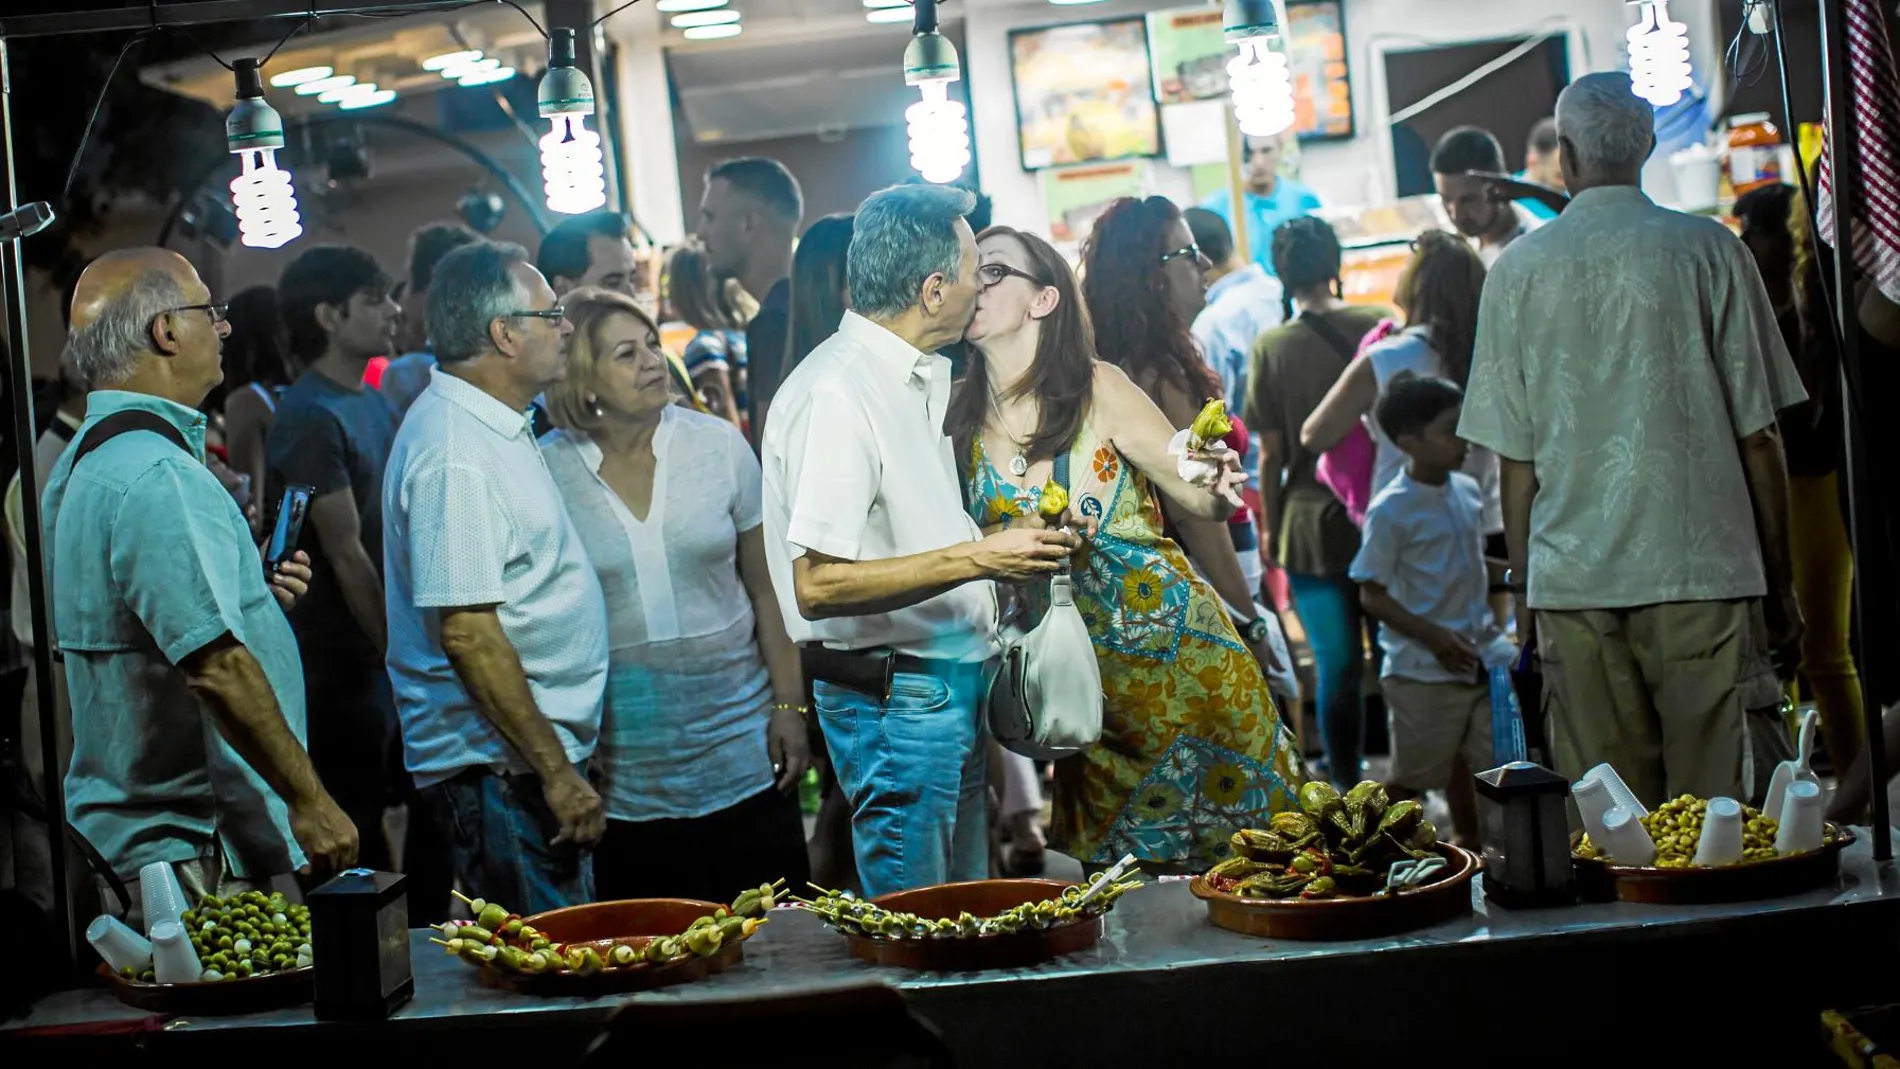 El distrito Centro se llena durante las fiestas de múltiples actividades entre las que no faltan los típicos puestos de encurtidos / Alberto R. Roldán